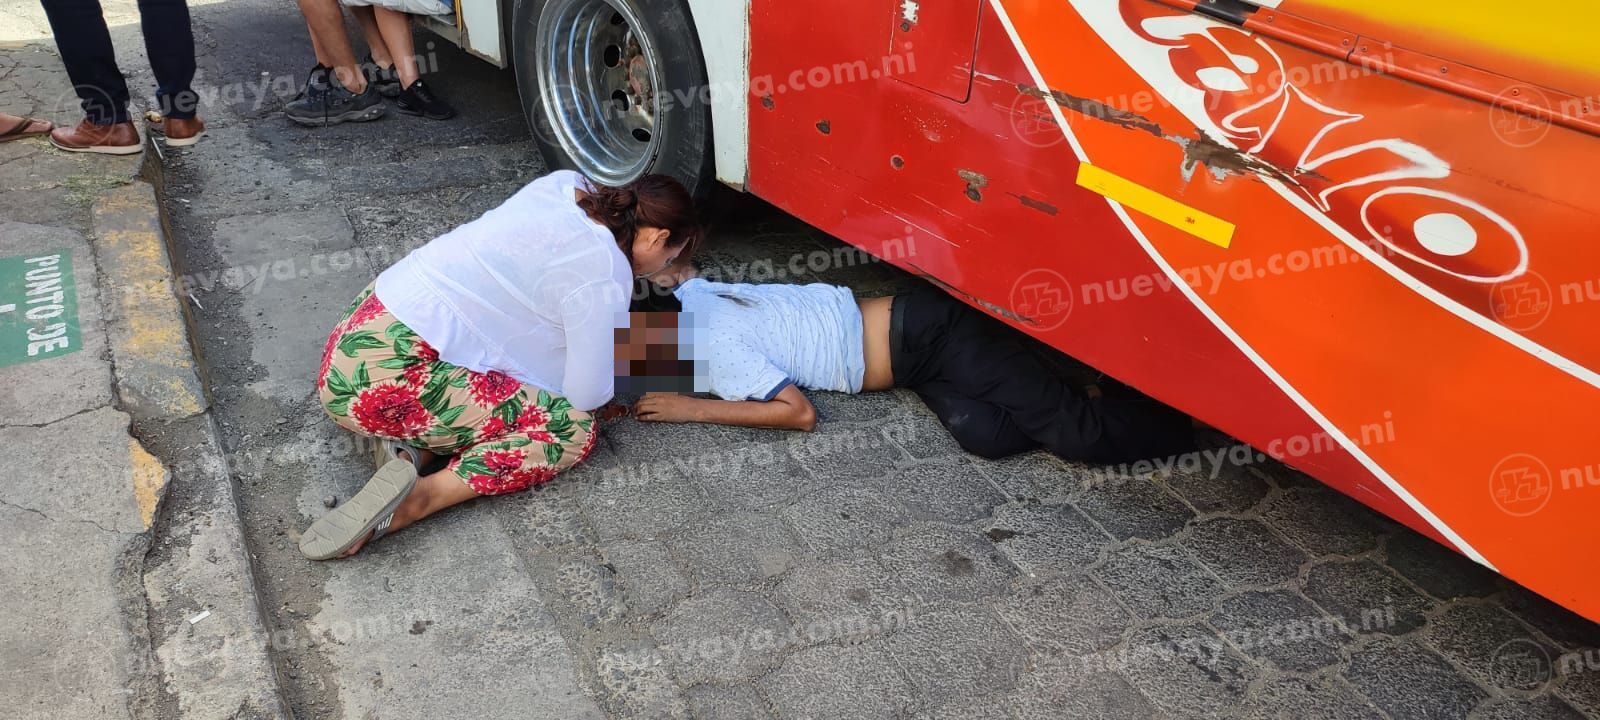 Un peatón murió arrollado por un autobús de la ruta 165 en el reparto shick, managua